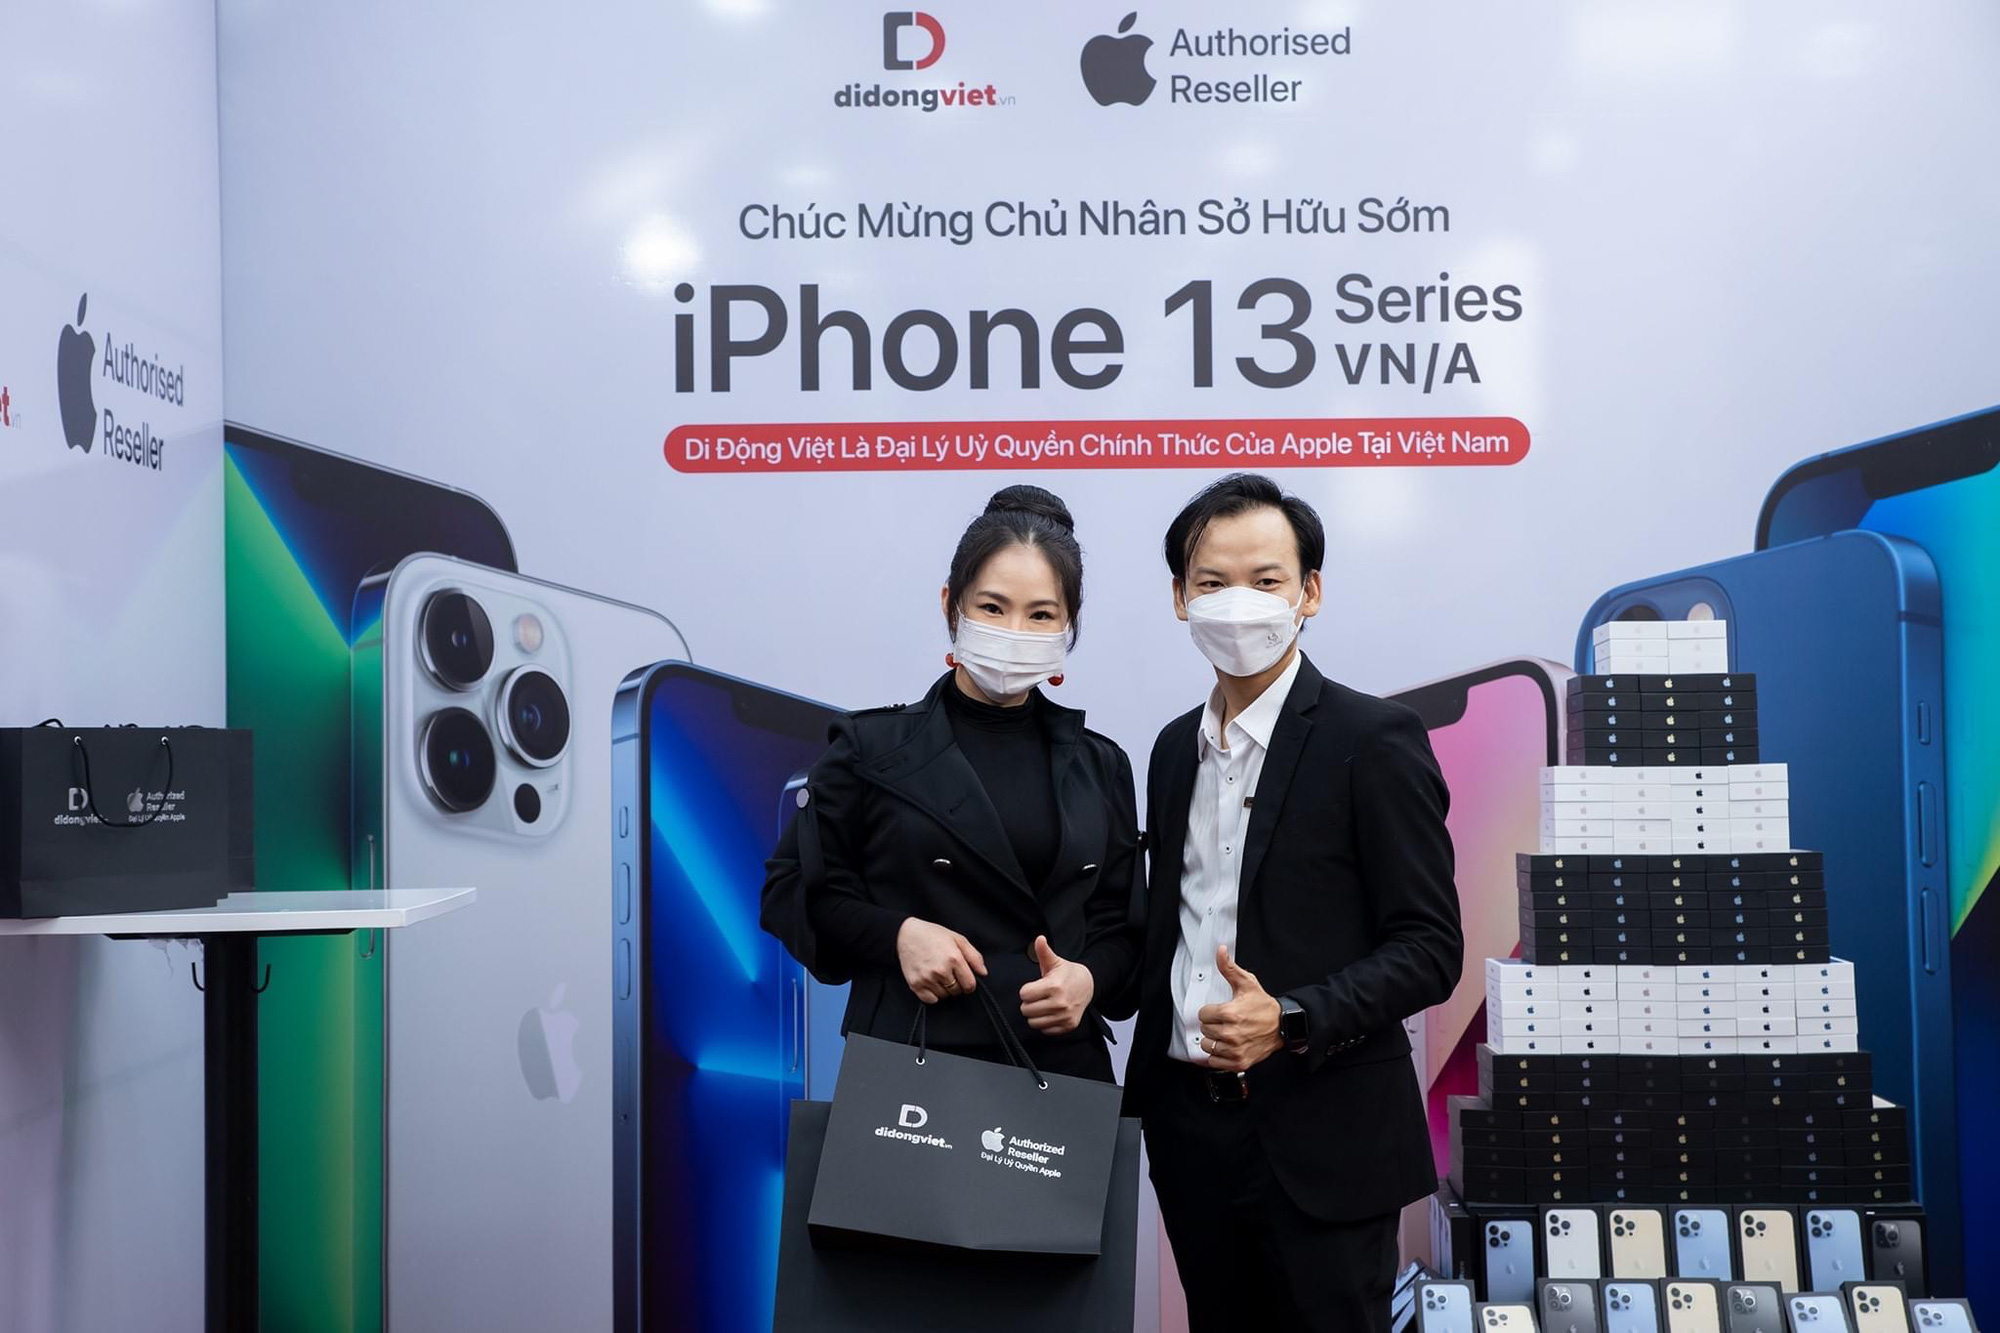 Ngọc Trinh, Hoa hậu Khánh Vân cùng loạt sao Việt tưng bừng chốt đơn iPhone 13, màu nào được lựa chọn nhiều nhất? - Ảnh 3.